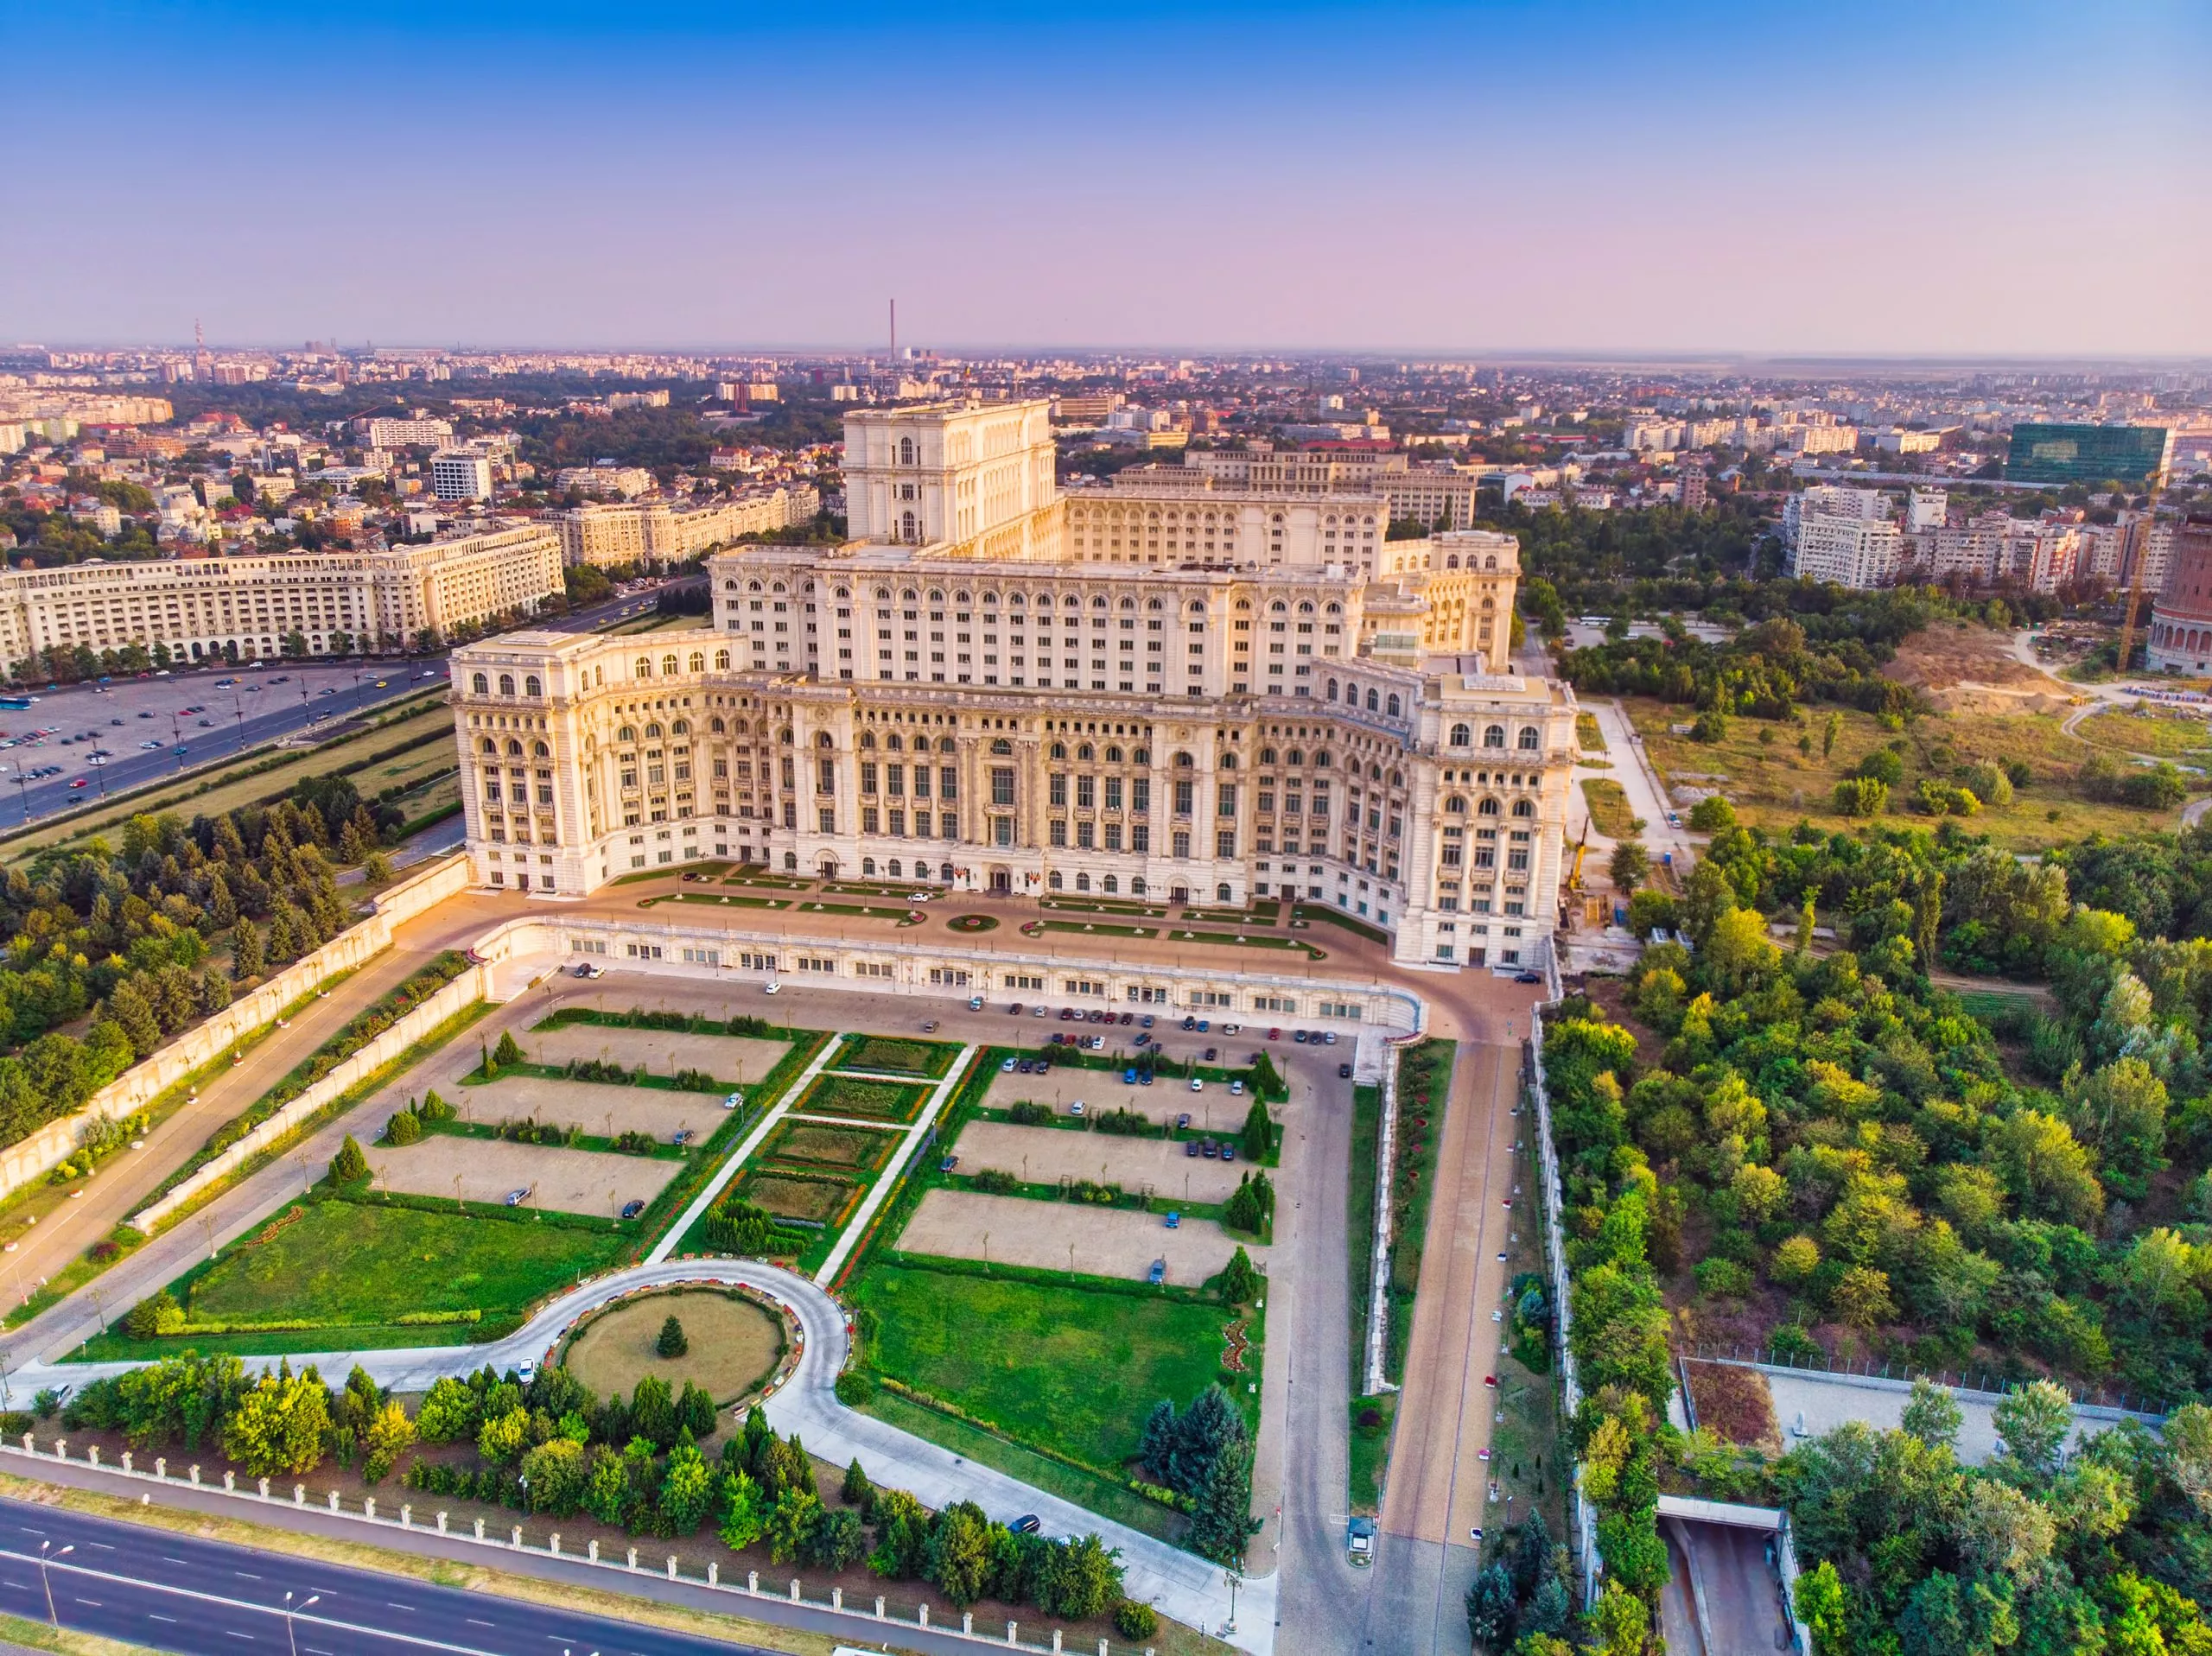 Parlamentsgebäude oder Haus des Volkes in Bukarest Stadt. Luftaufnahme bei Sonnenuntergang mit blauem Himmel